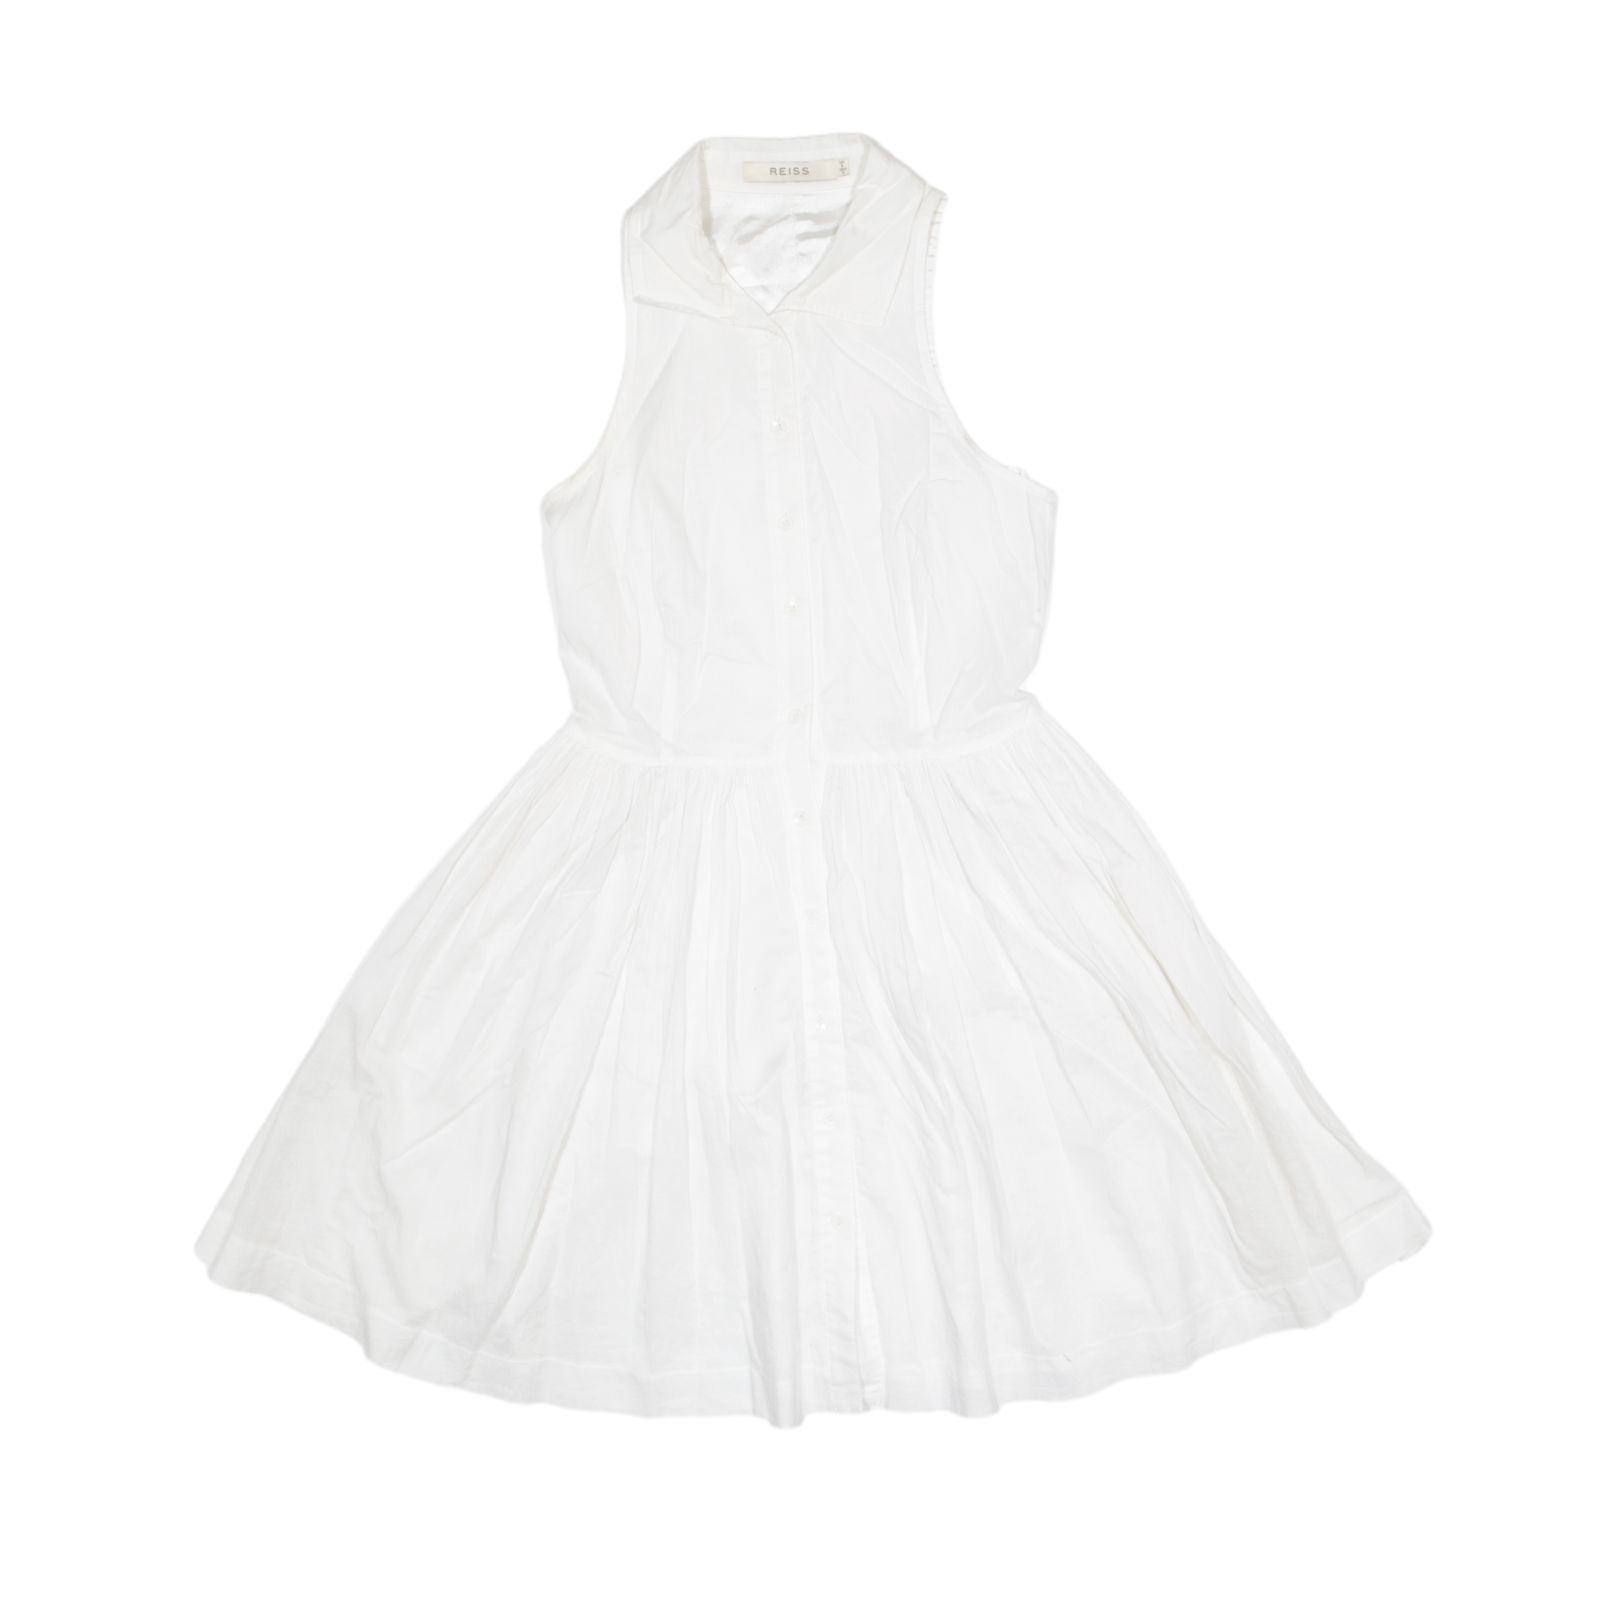 REISS Flare Skirt Shirt Dress White Sleeveless Knee Length Womens UK 6 | eBay UK